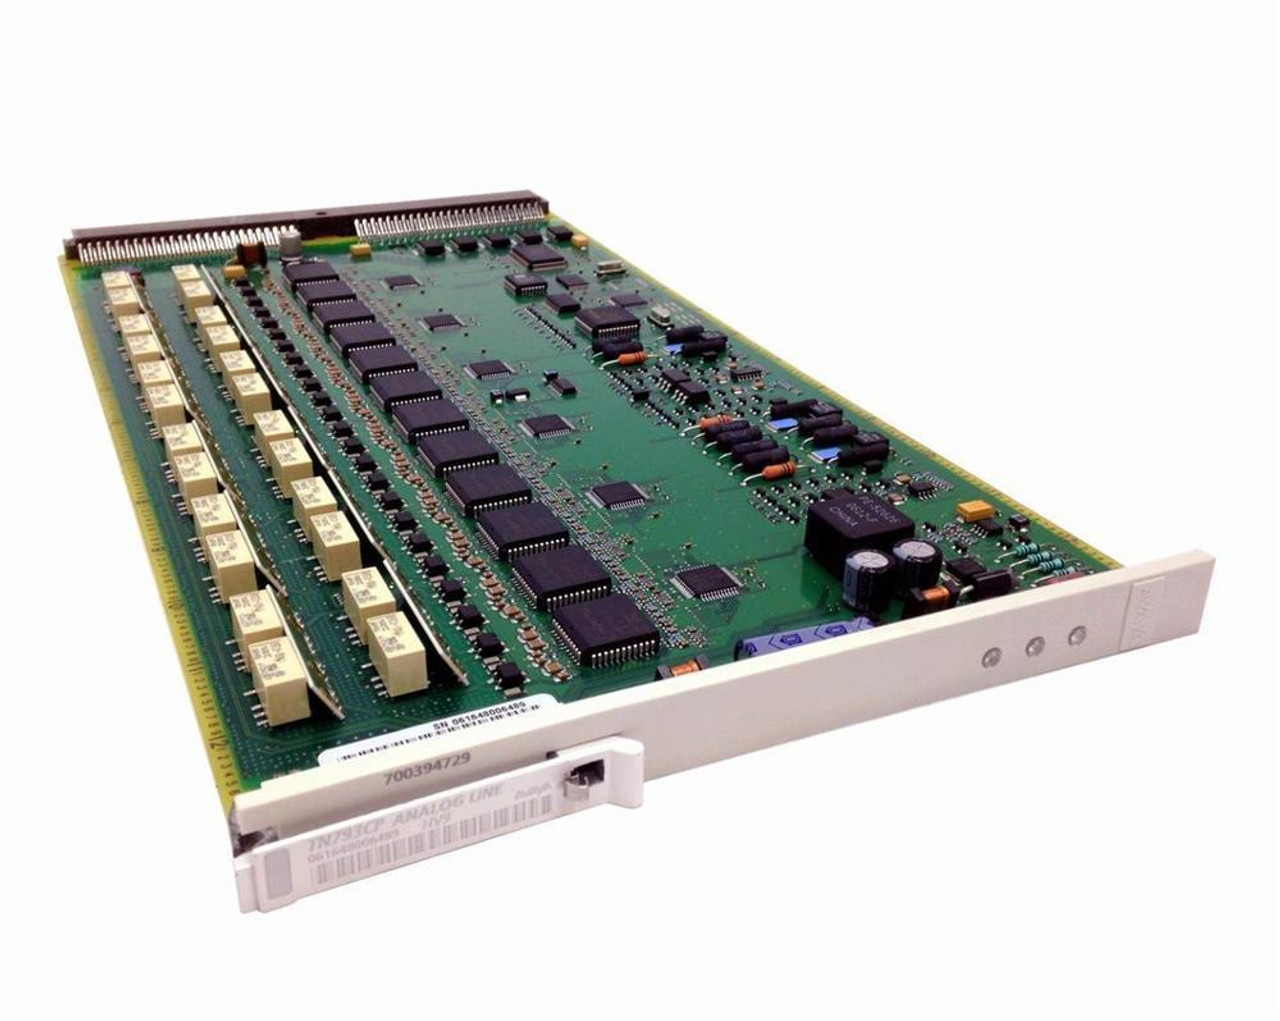 TN793V06-X Avaya Tn793 V06 24-Ports Analog Line Card (Refurbished)